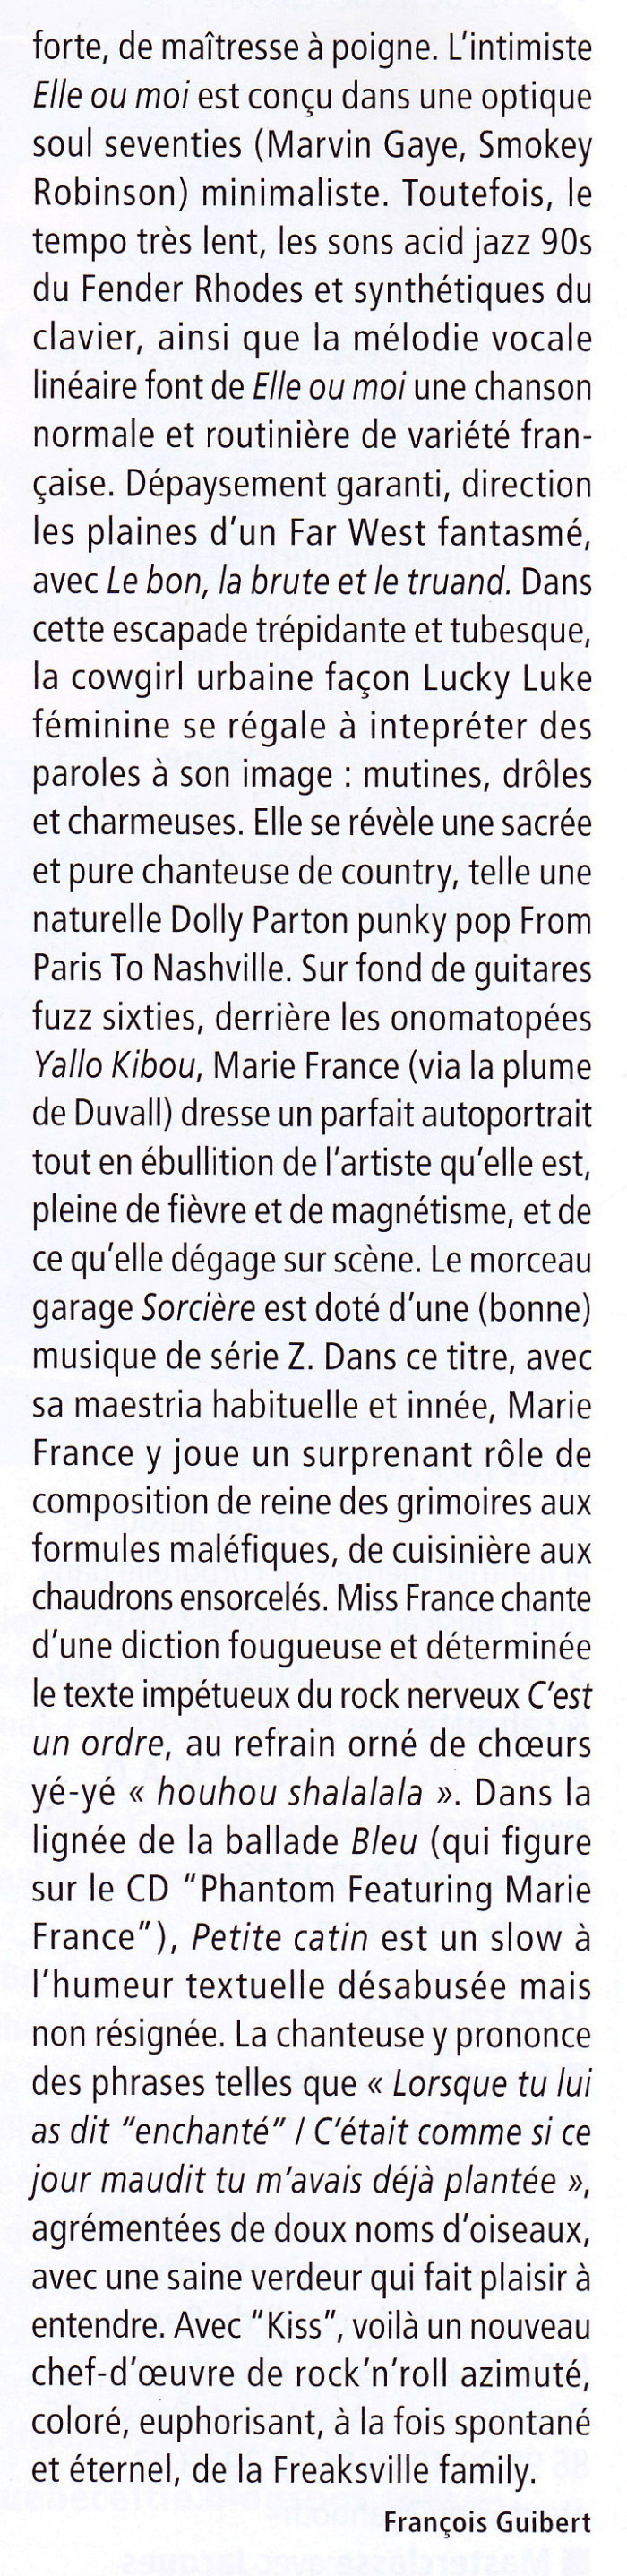 MARIE FRANCE & LES FANTÔMES 24/03/2012 TIPI à LIÈGE (Belgique) 1201250908481423619347296